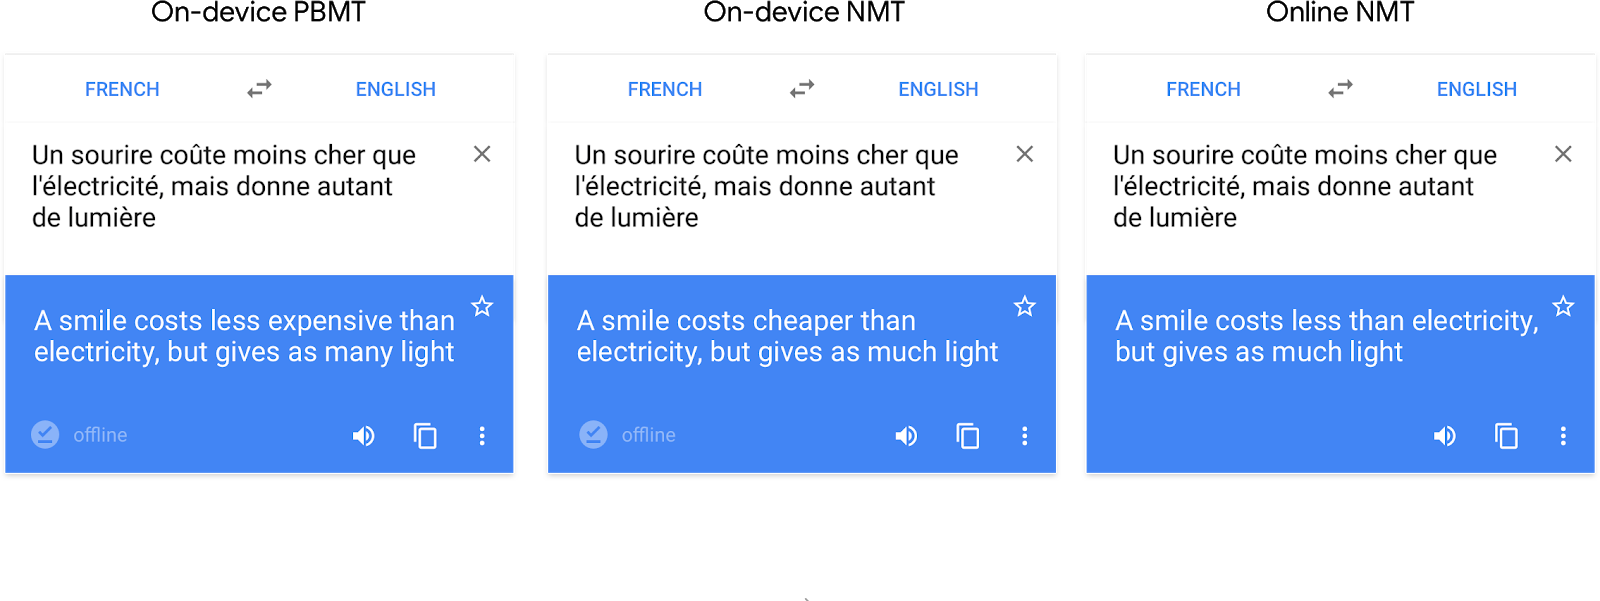 Google Translate ปรับปรุงการแปลทั้งประโยคแบบออฟไลน์ให้ดีขึ้นด้วยระบบ AI